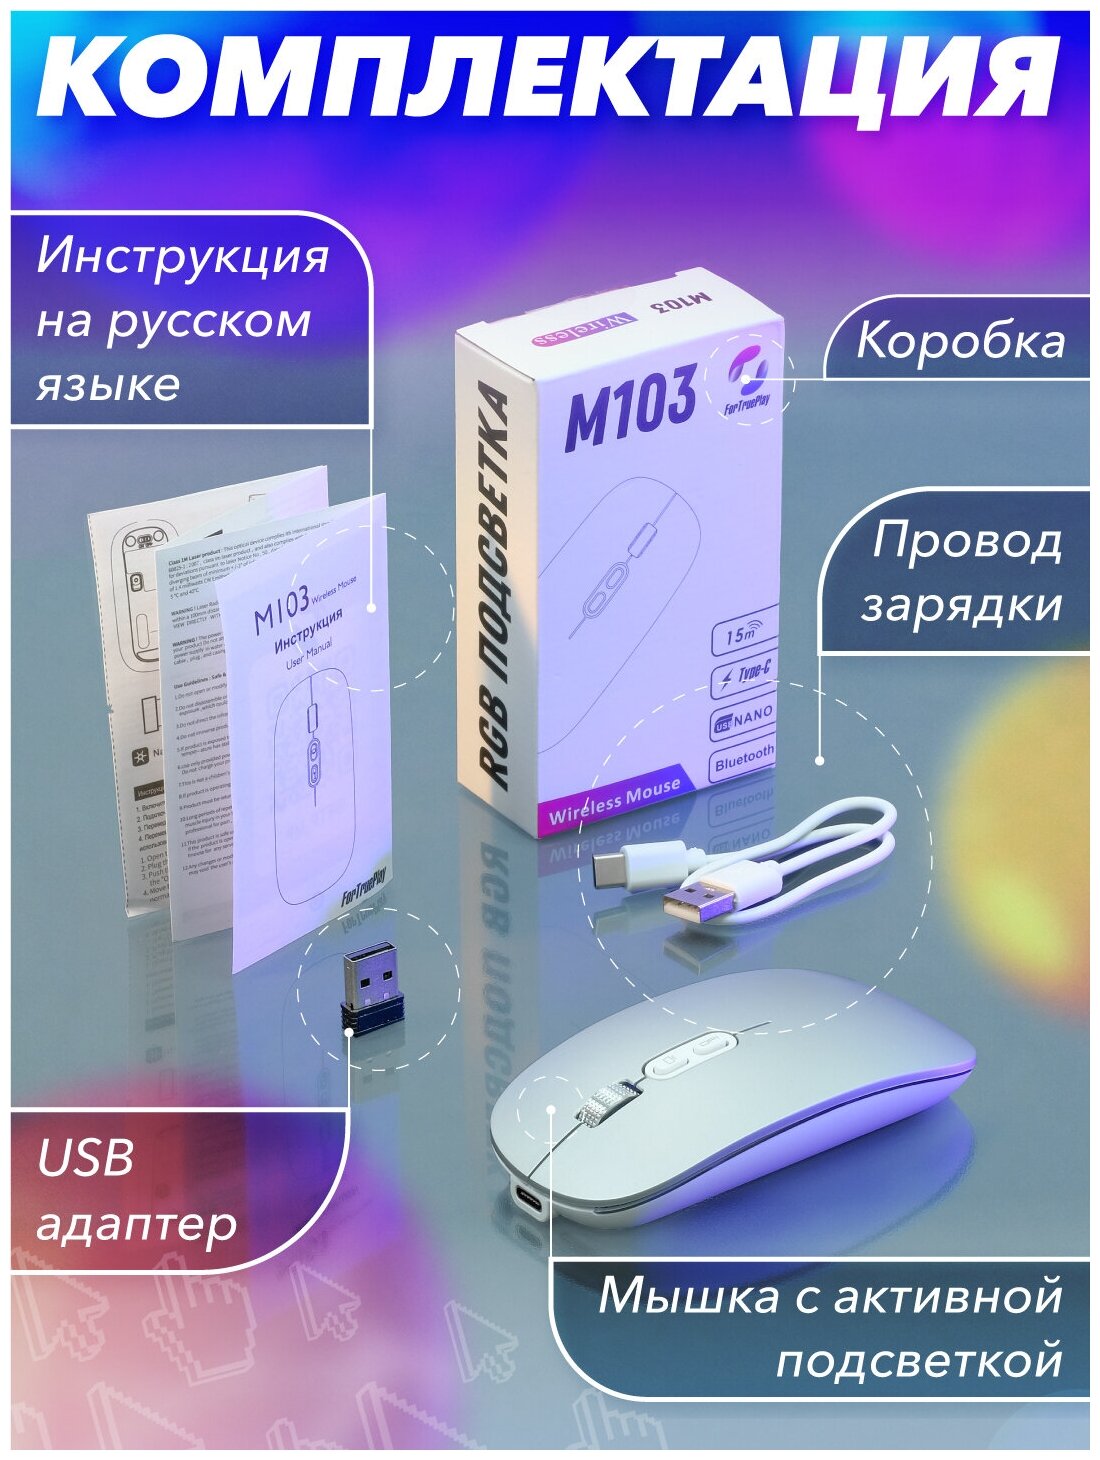 Мышь беспроводная М103 Bluetooth 51 + Nano USB Зарядка Type-C Компьютерная мышка с RGB подсветкой бесшумная мышка с Аккумулятором